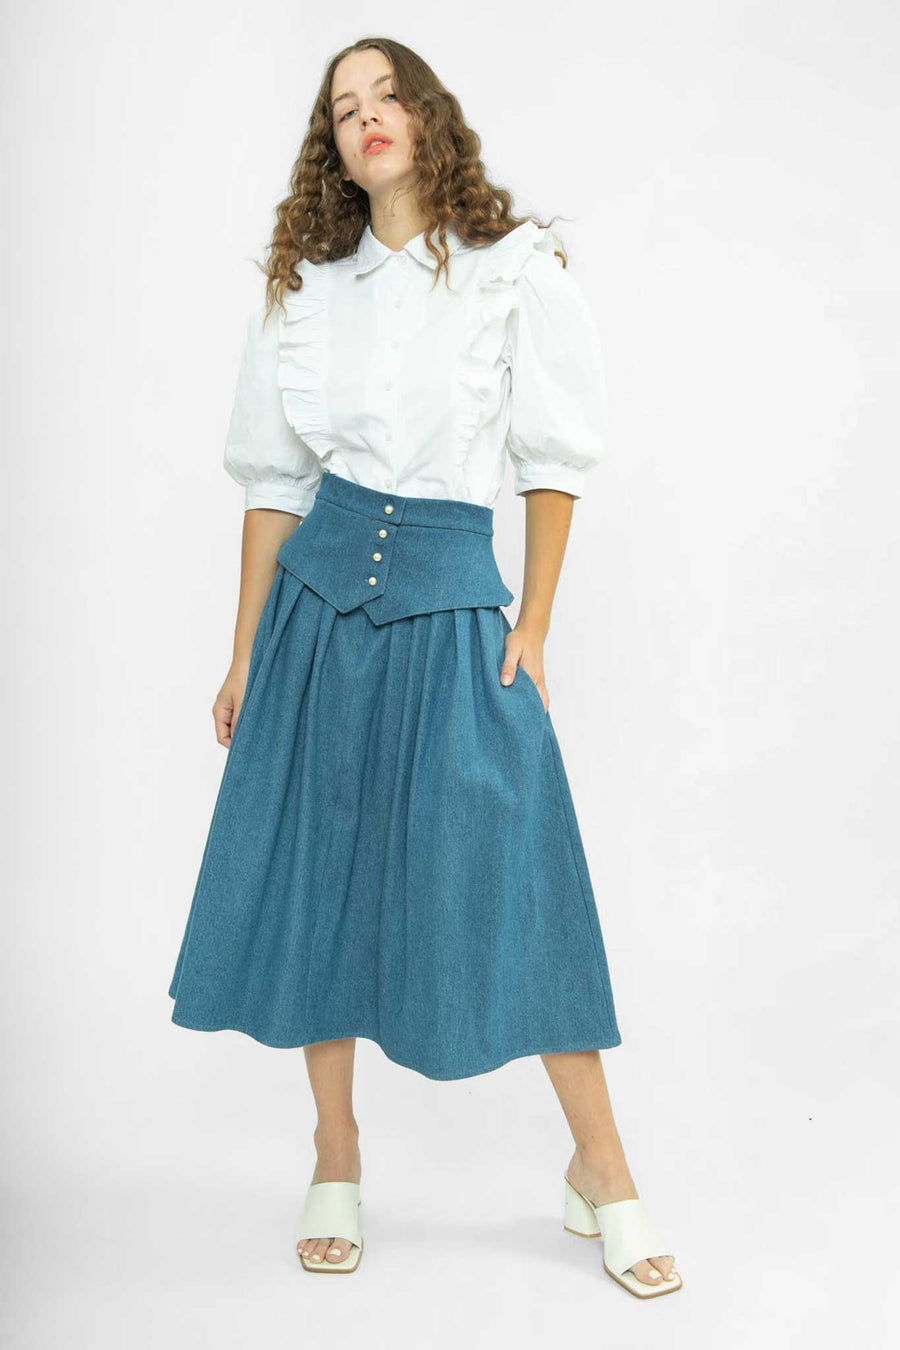 BATSHEVA - Landa Skirt in Medium Blue Denim